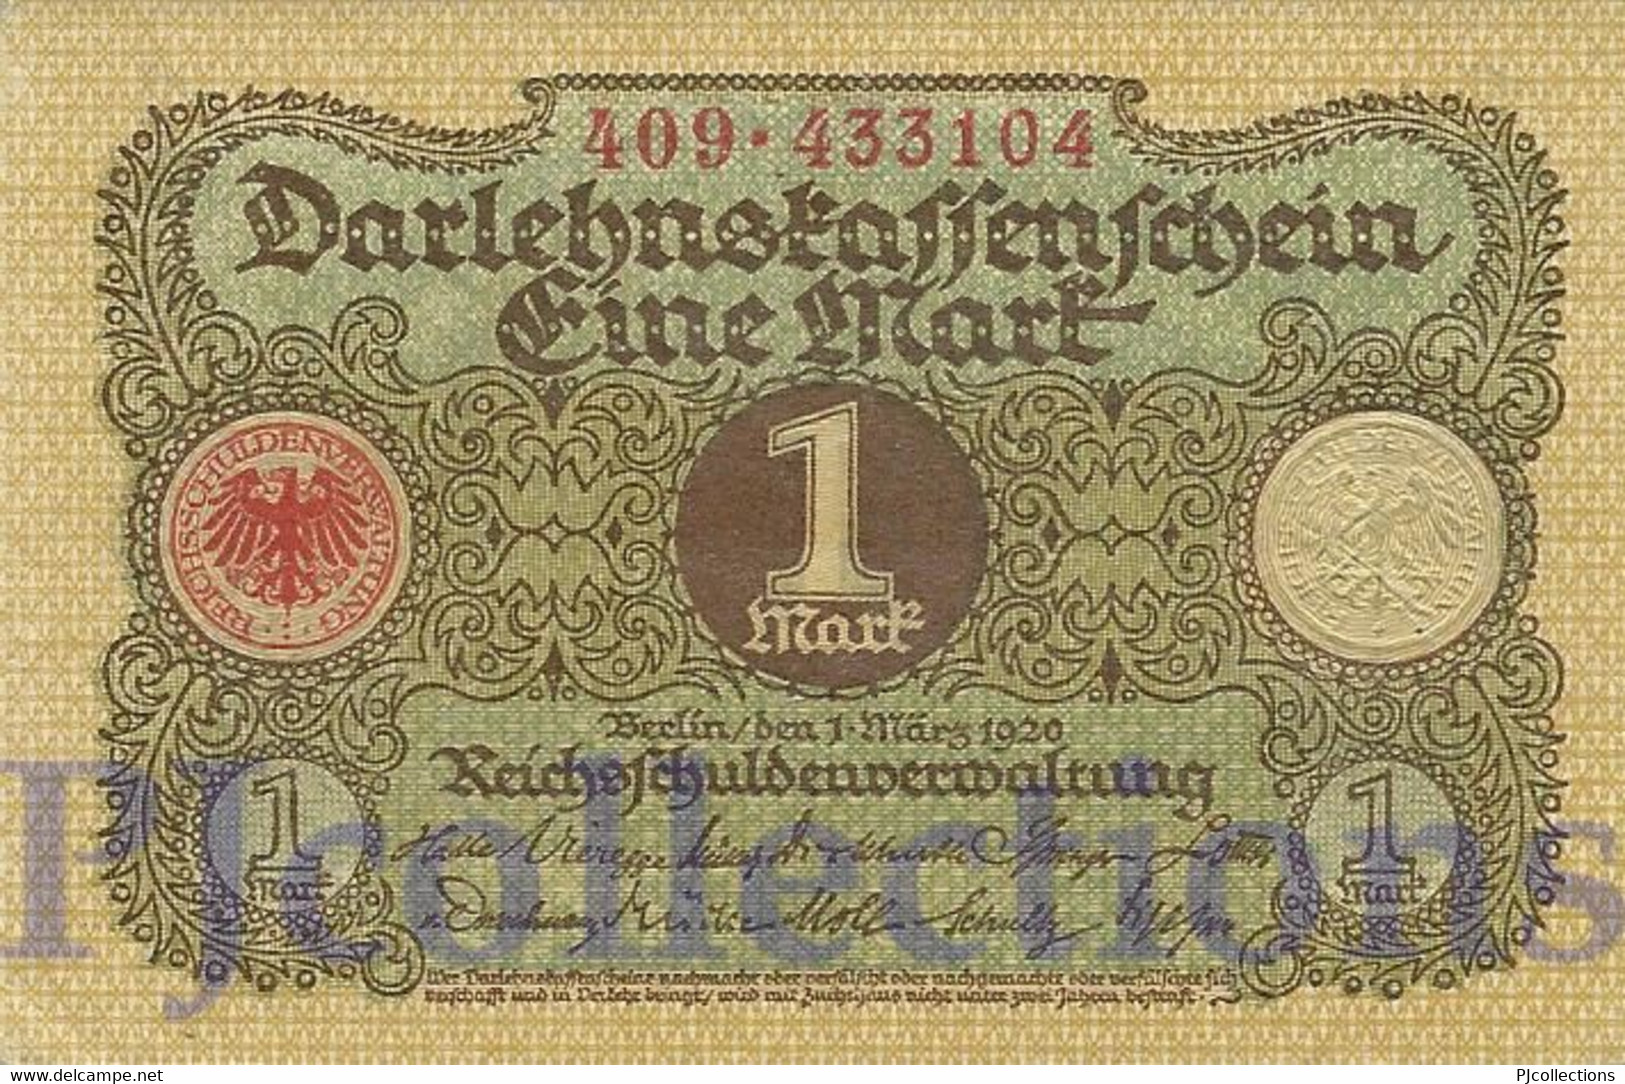 GERMANY 1 MARK 1920 PICK 58 UNC - Reichsschuldenverwaltung